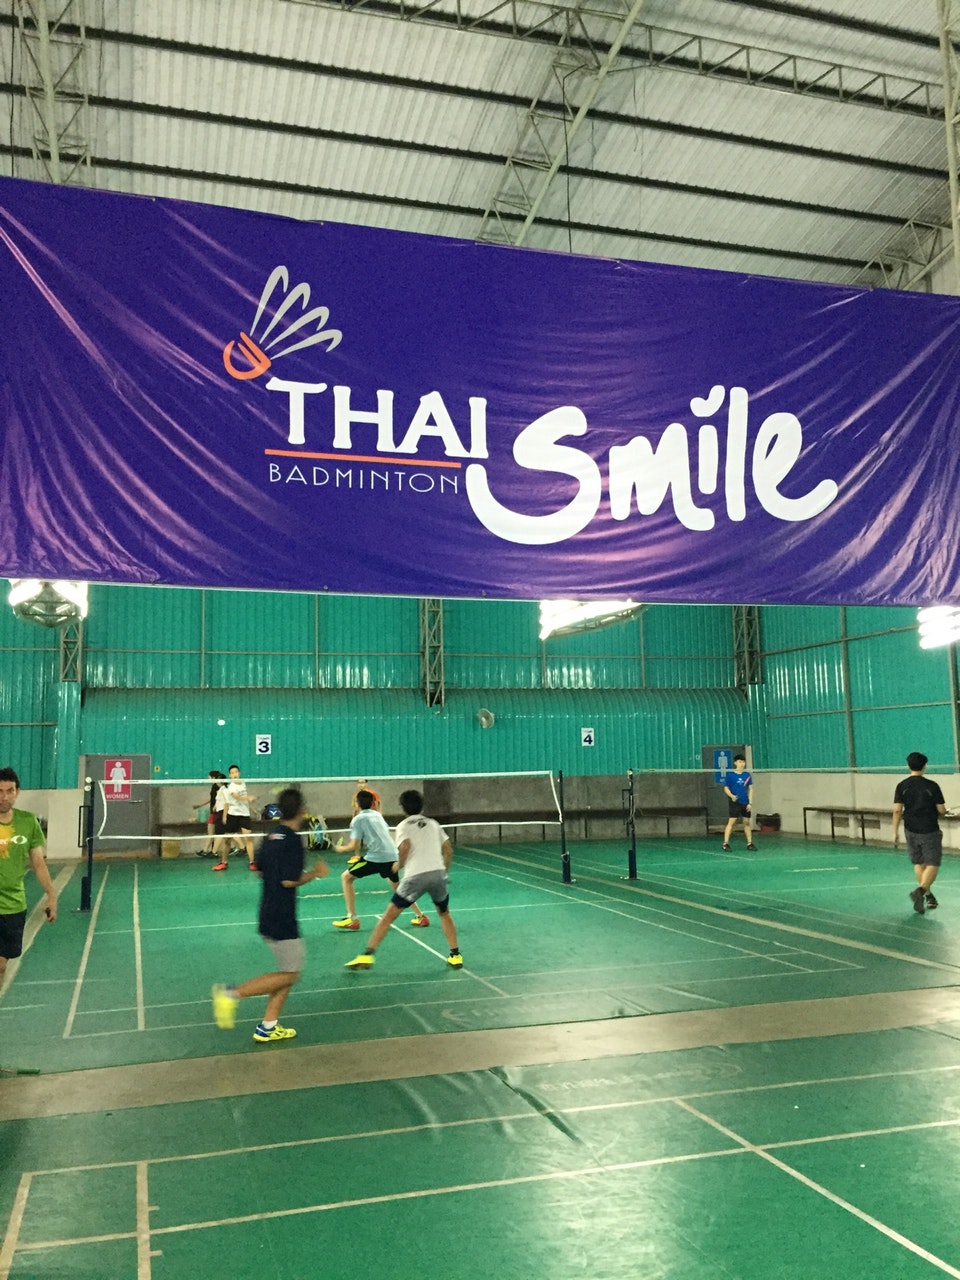 สนามแบดมินตัน - Fyc badminton court 